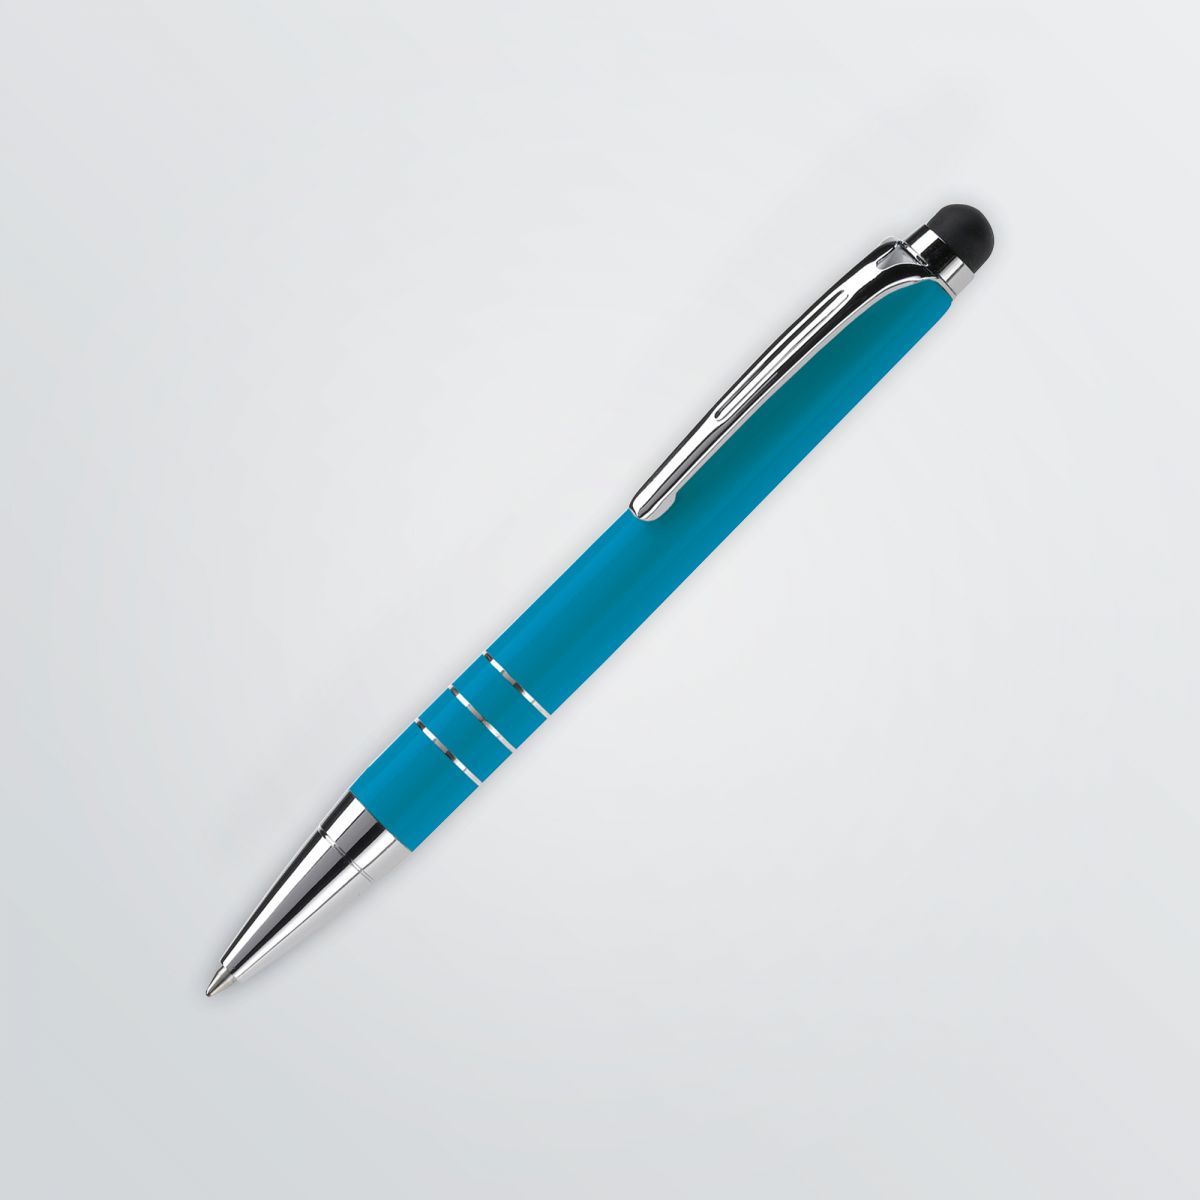 Individualisierbarer Kugelschreiber mit Push-Mechanismus und Touchpoint